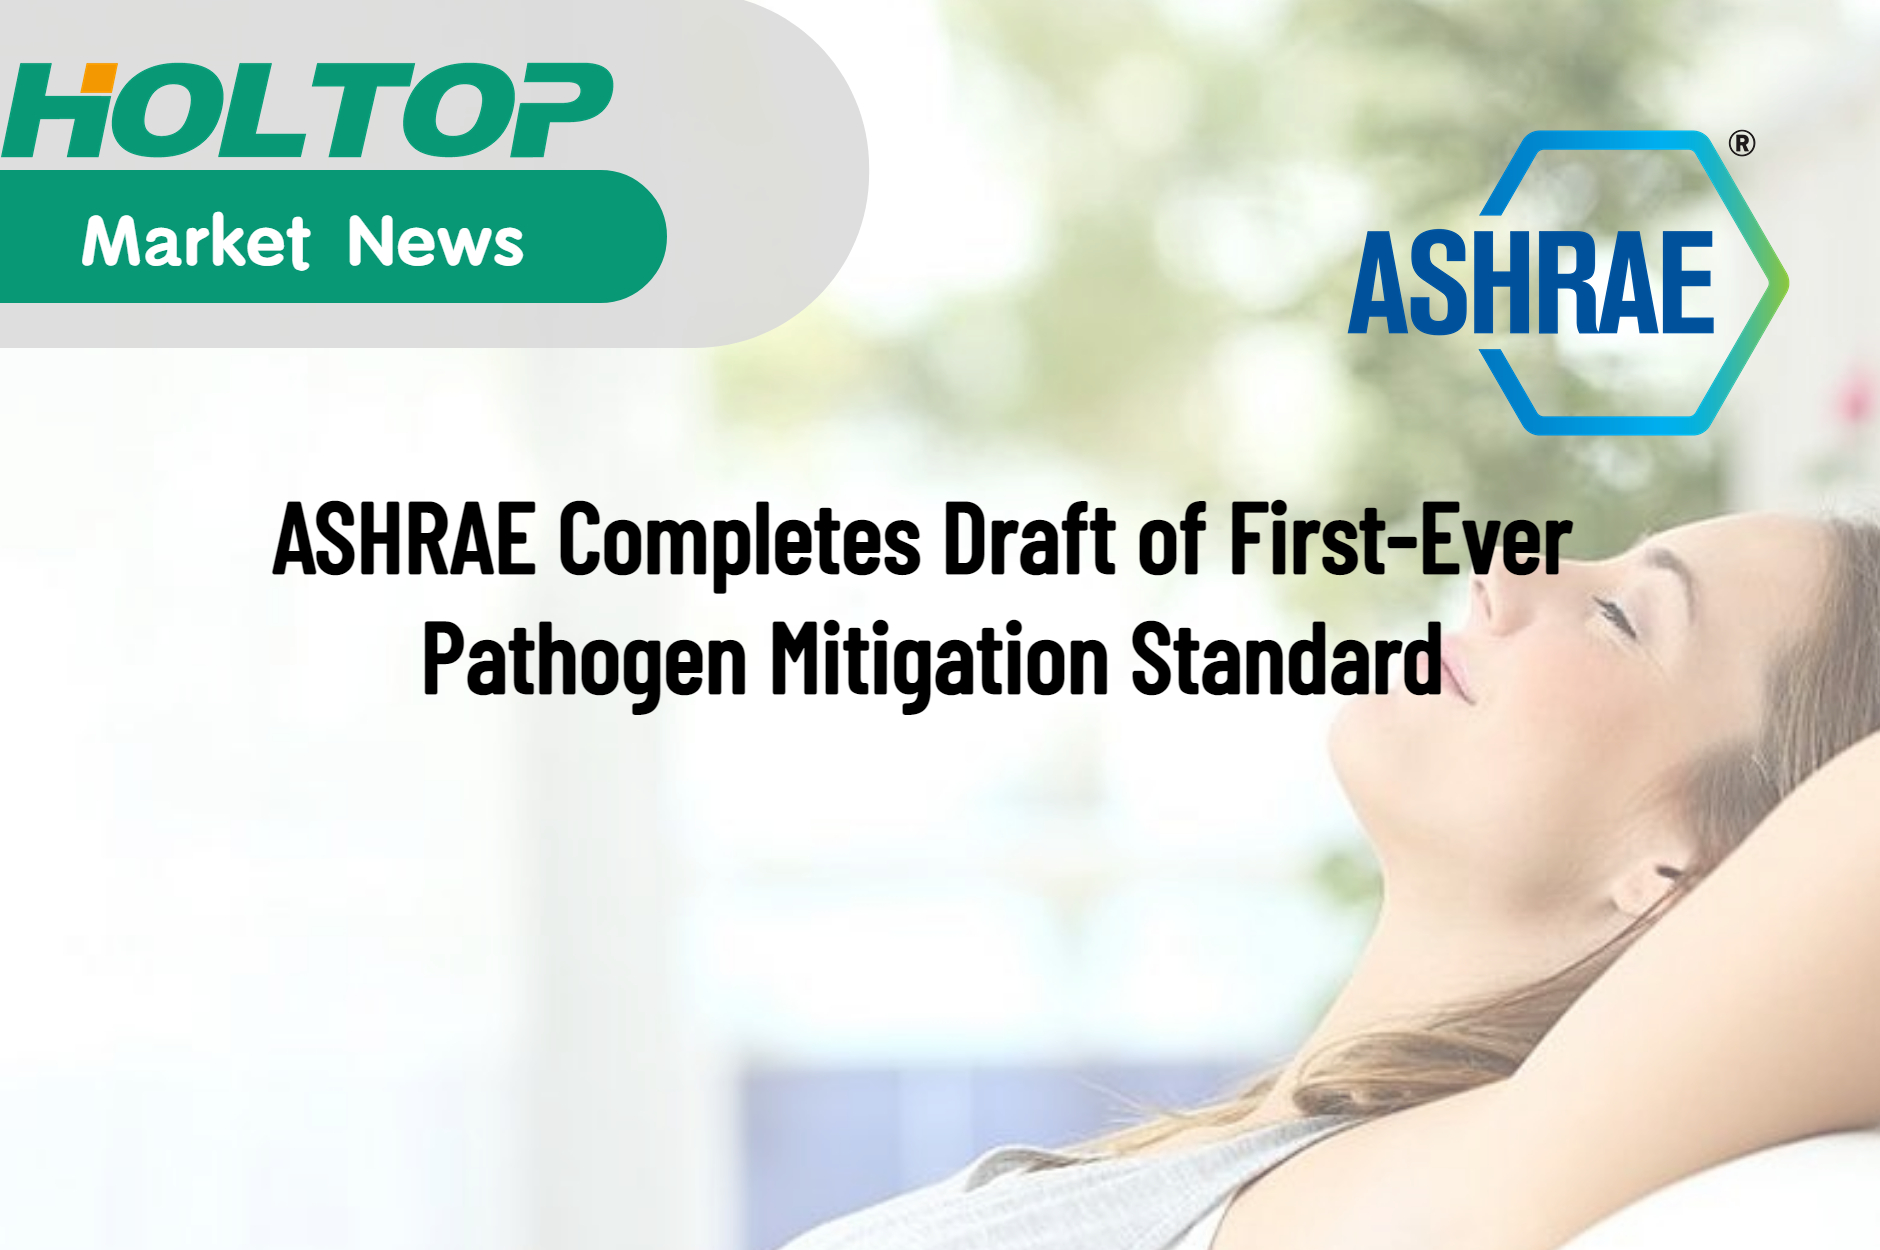 ASHRAE schließt Entwurf des allerersten Standards für die Eindämmung von Krankheitserregern ab